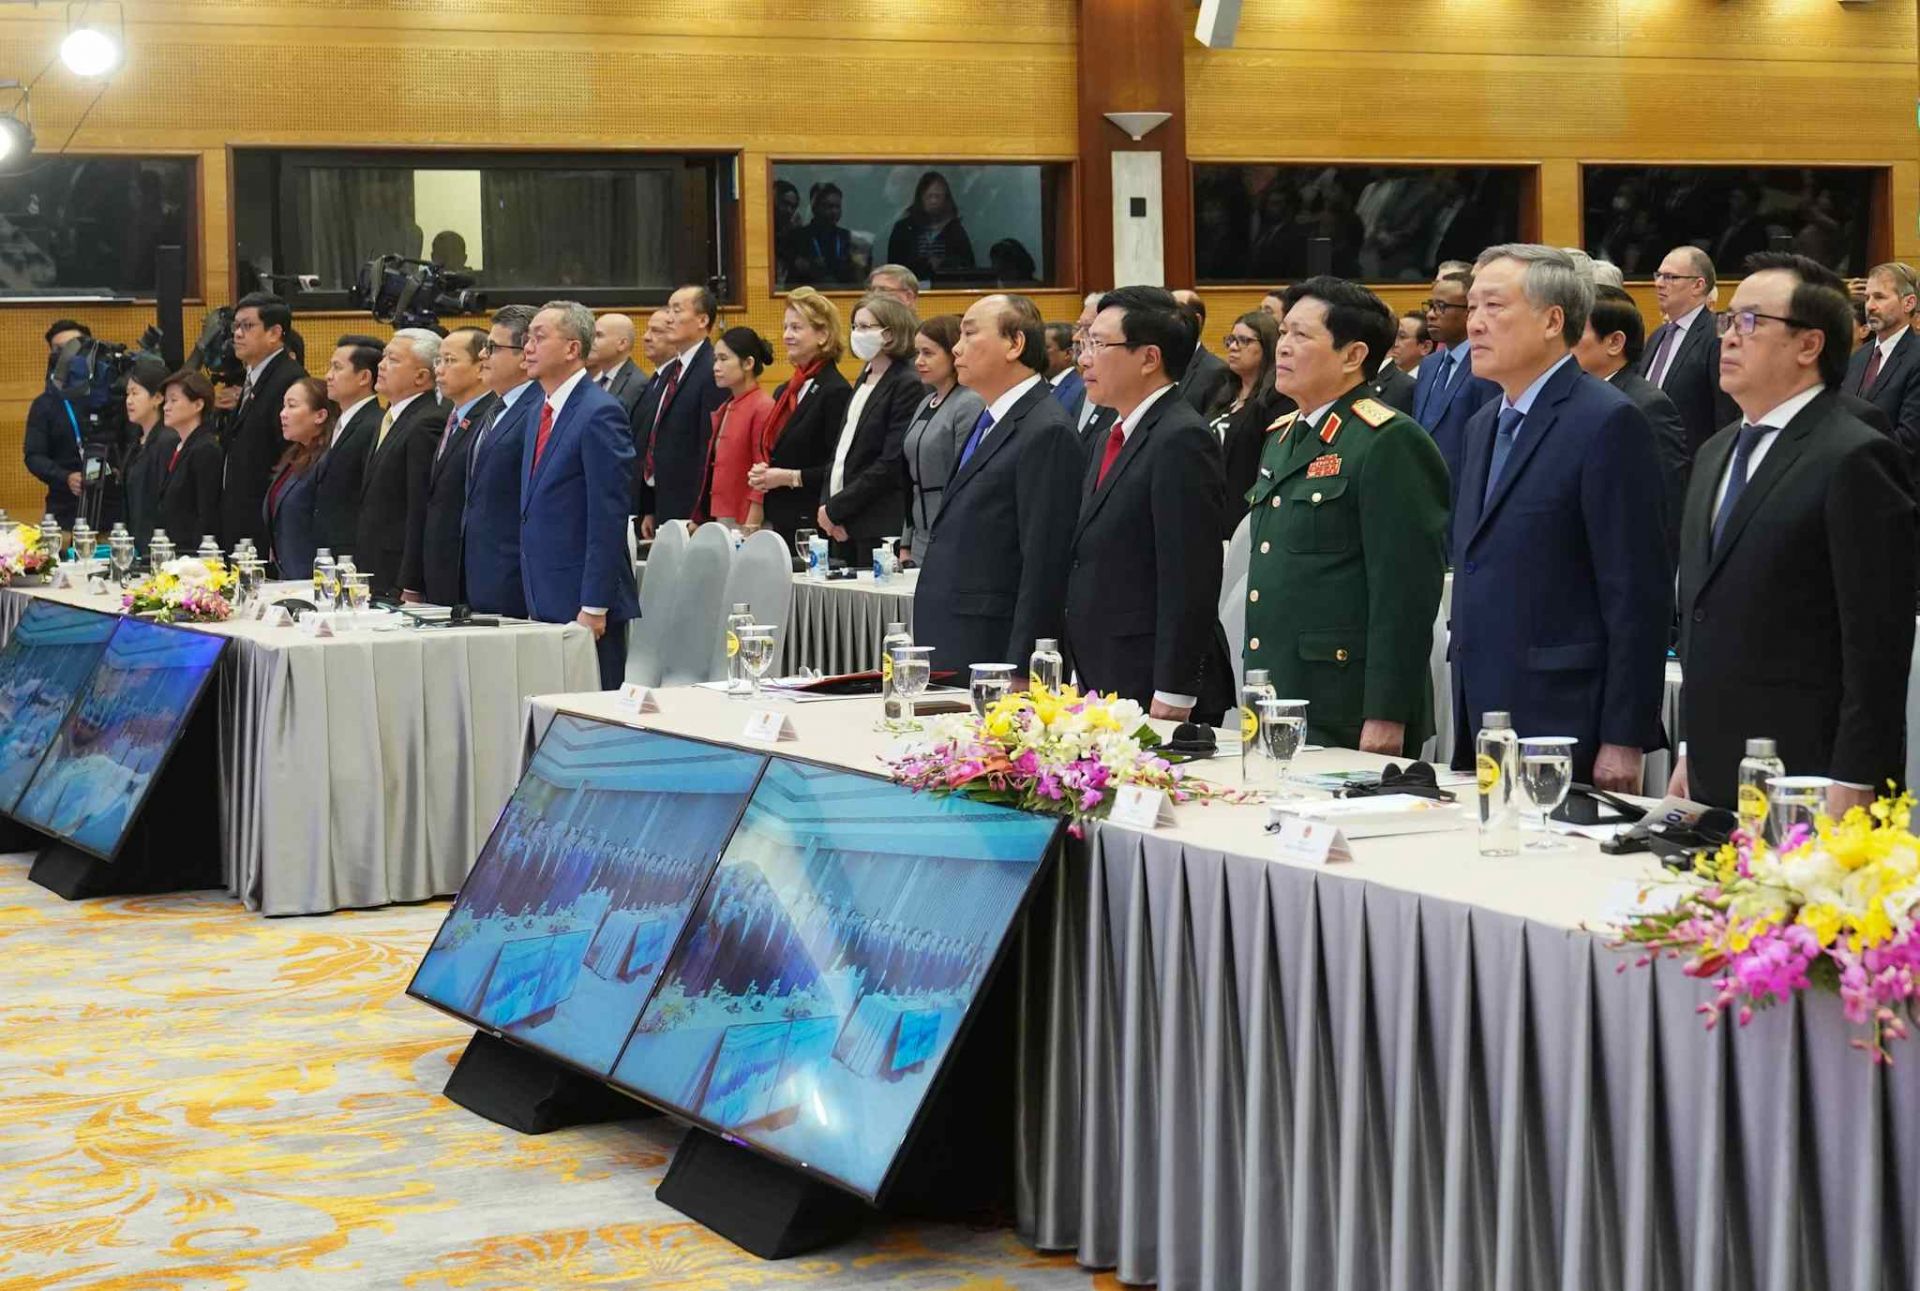 Lễ bế mạc Hội nghị Cấp cao ASEAN lần thứ 37 và các Hội nghị Cấp cao liên quan và lễ chuyển giao vai trò Chủ tịch ASEAN cho Brunei